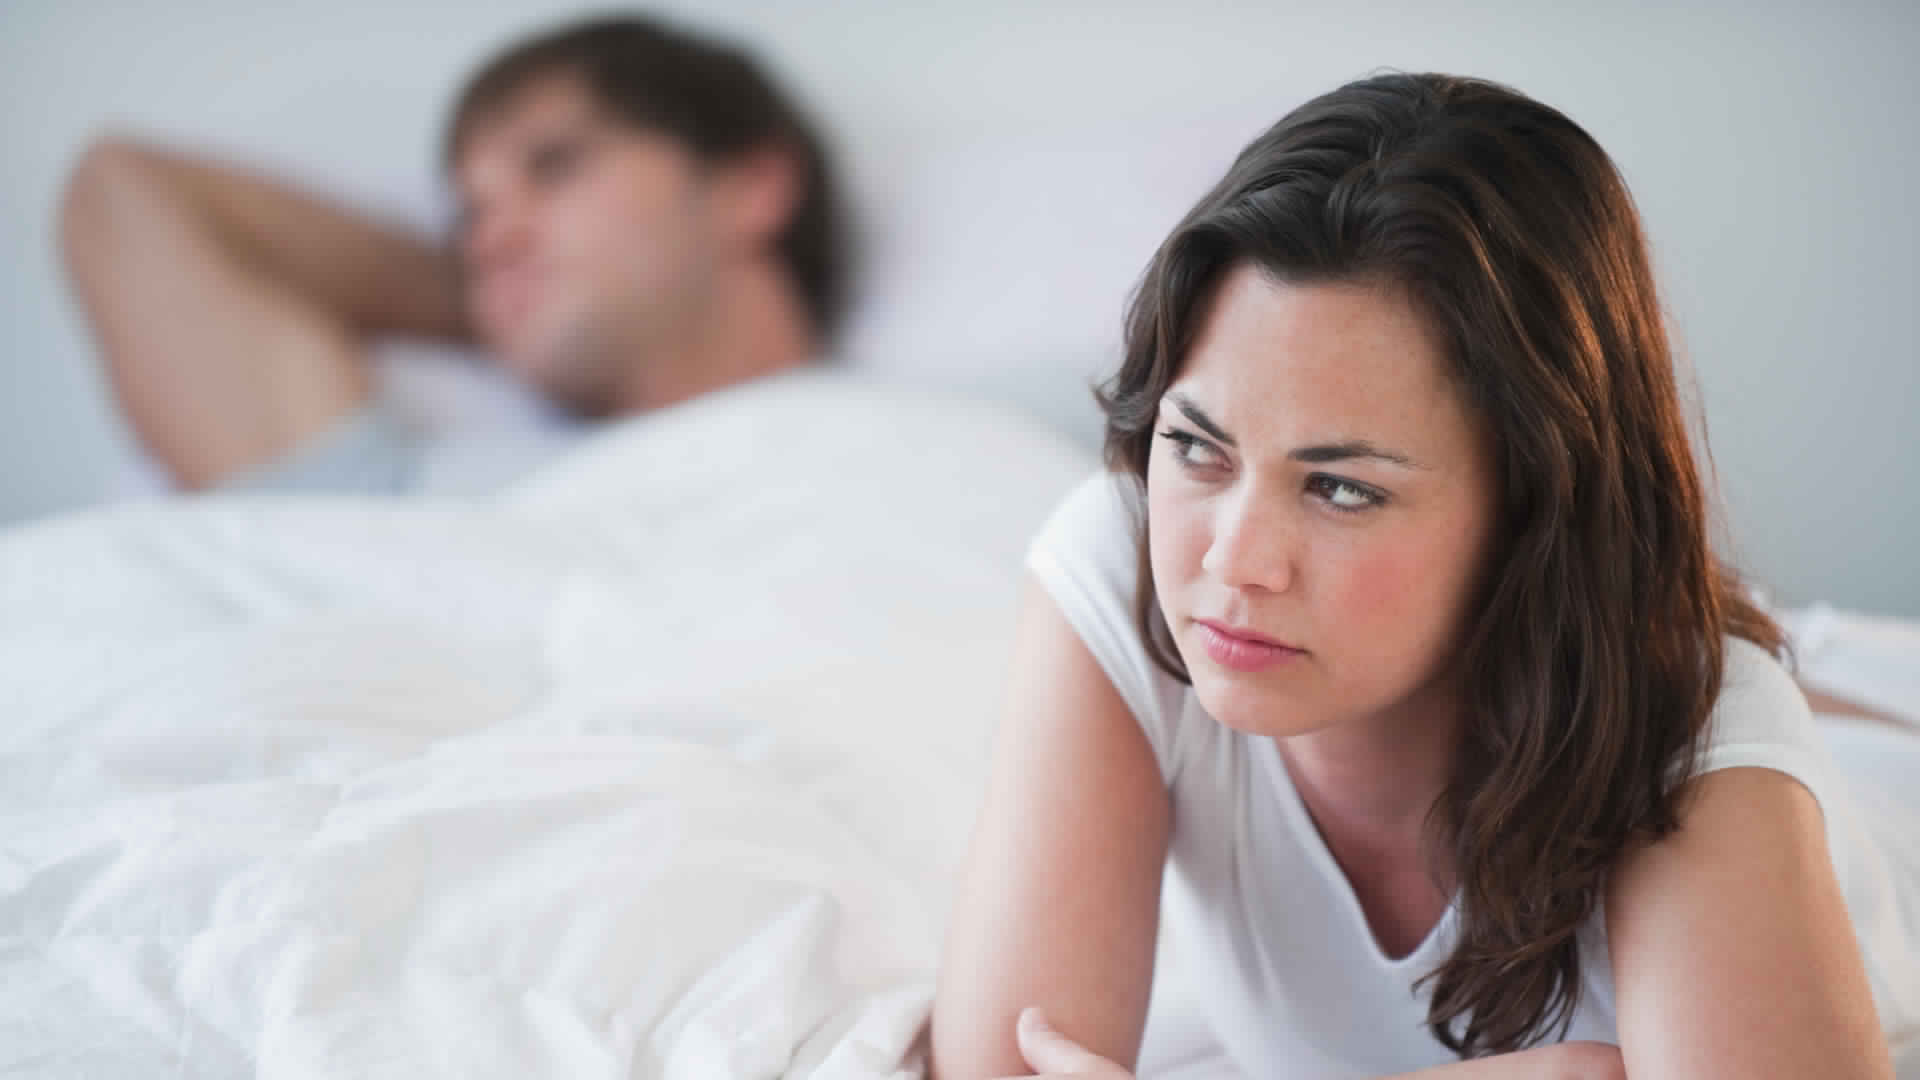 Тумачење сна о мужу који има секс са својом женом с леђа